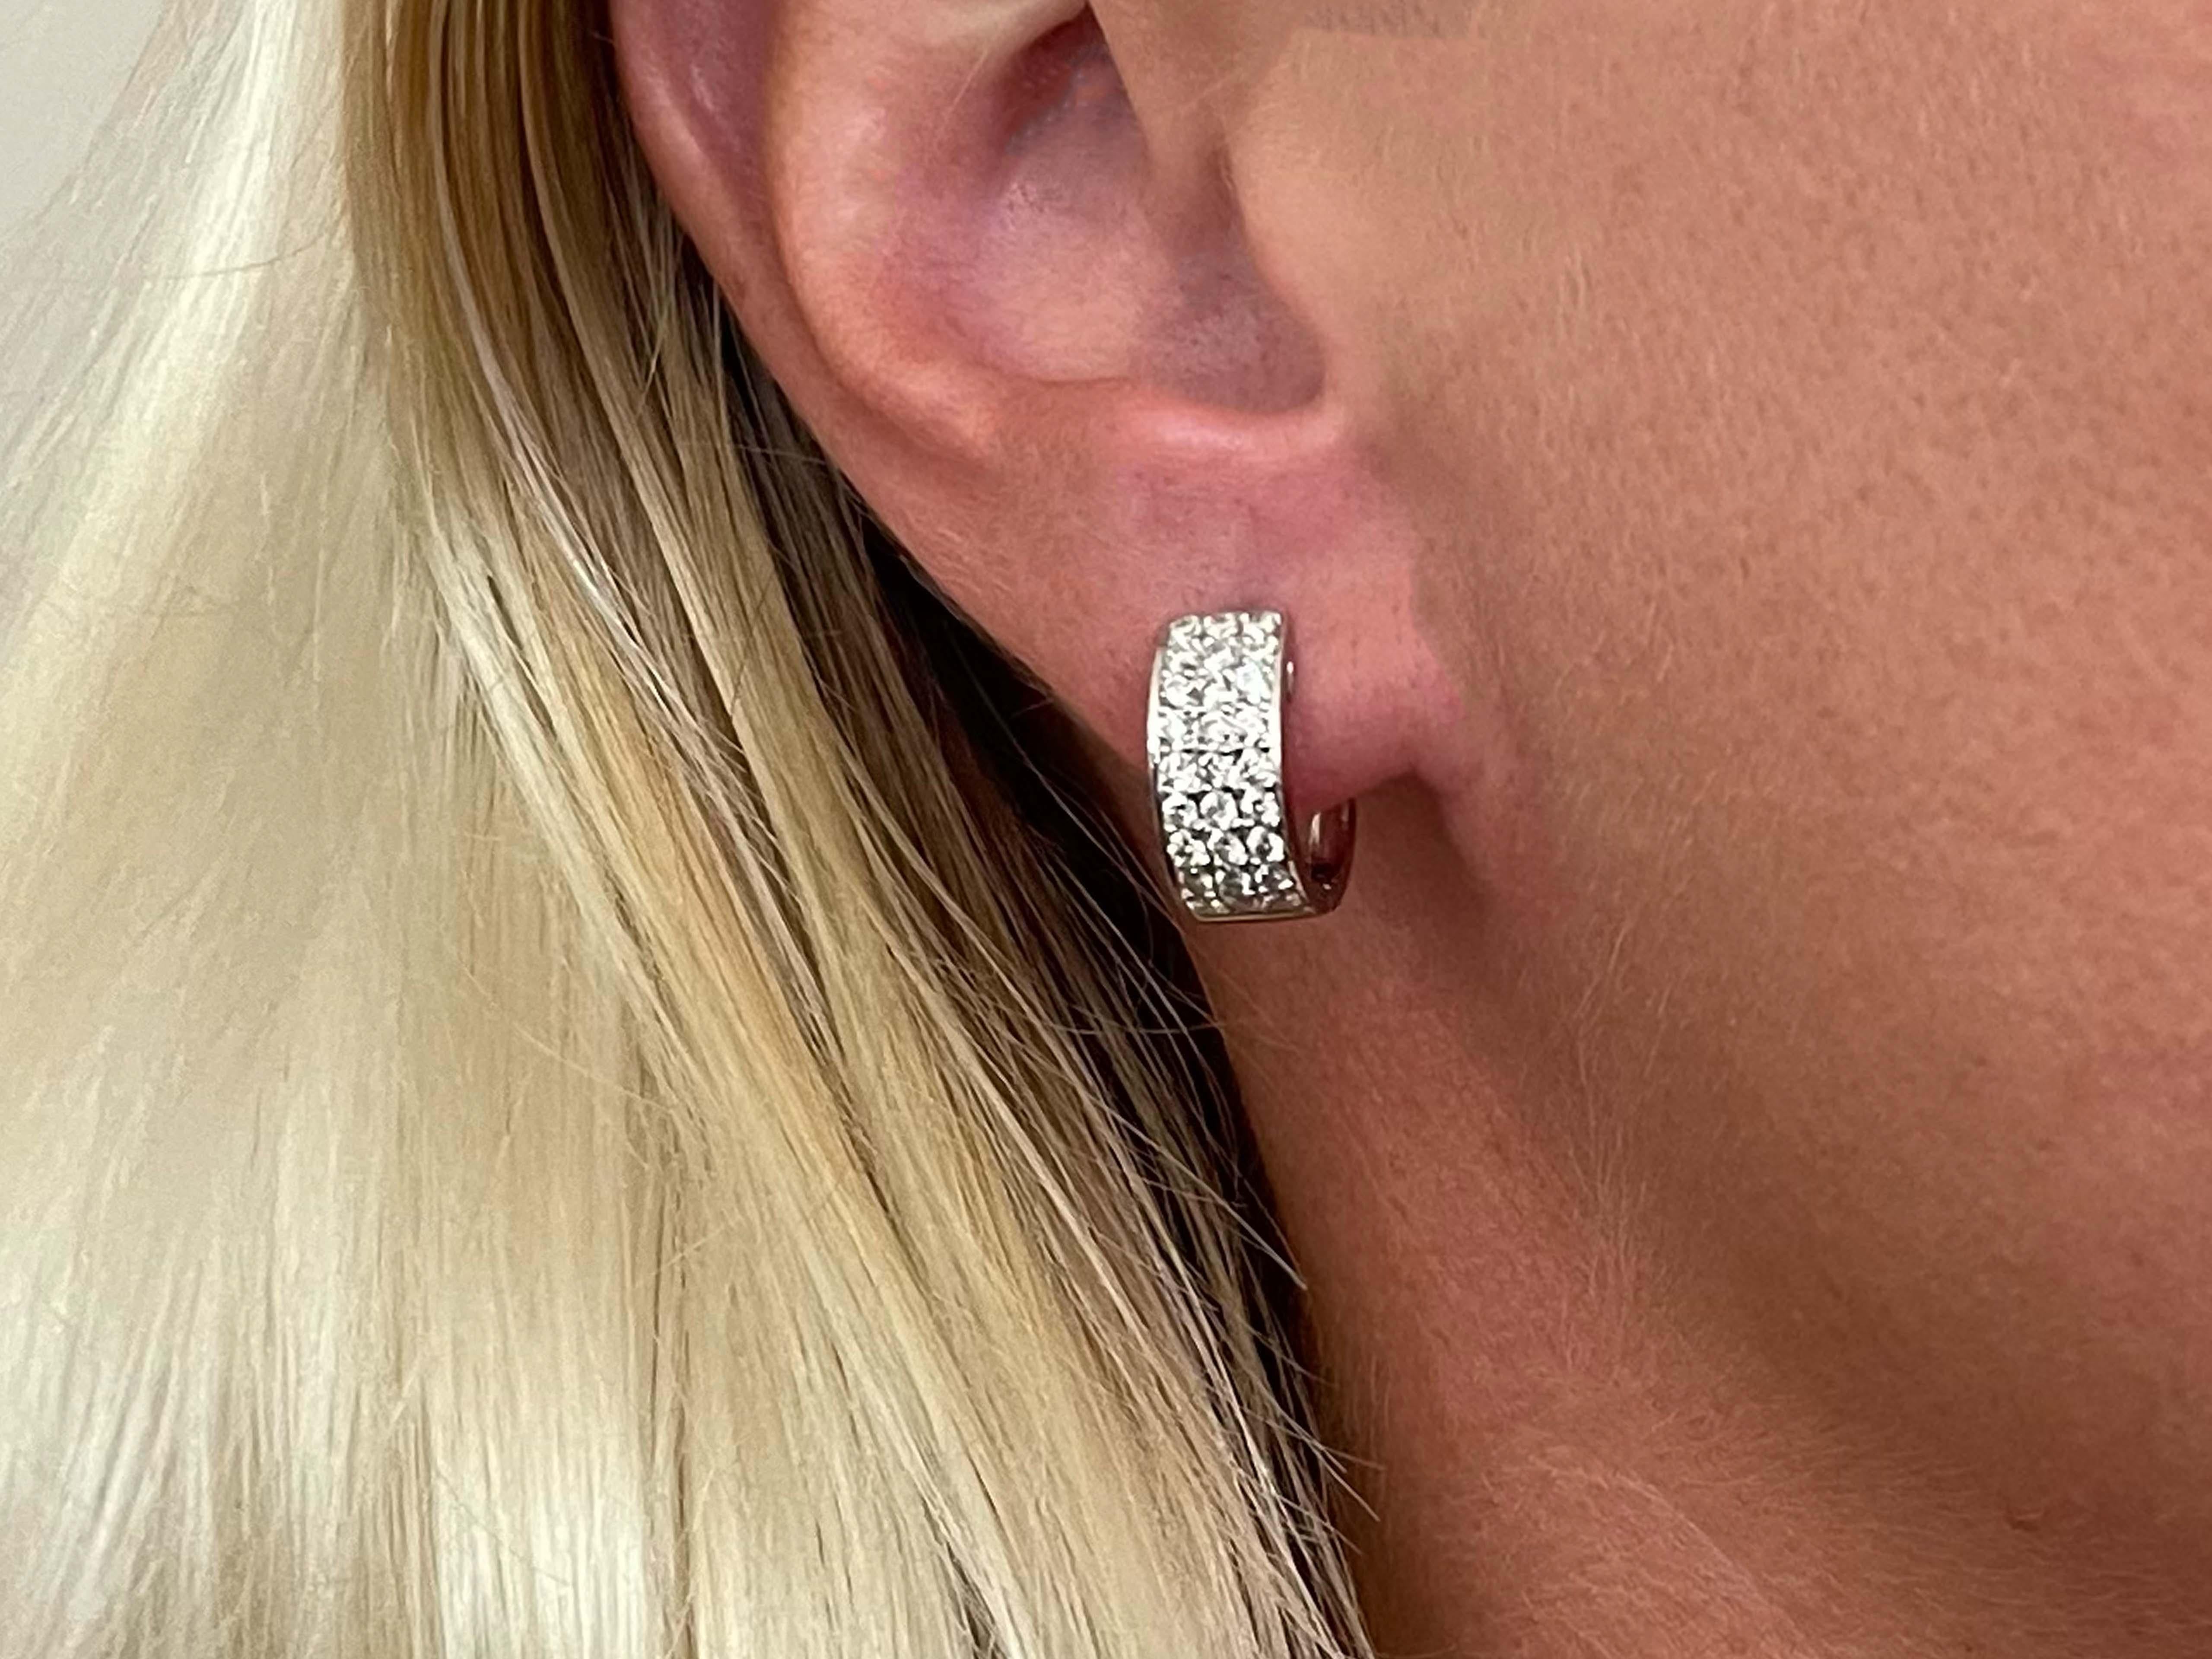 Ohrringe Spezifikationen:

Stil: Diamant-Reifen-Ohrringe

Metall: 18k Weißgold

Gesamtgewicht: 8,2 Gramm

Abmessungen: 14,4 mm hoch und 6,4 mm breit 

Diamanten: 54 Diamanten im runden Brillantschliff

Diamant-Fassung: Prong

Farbe des Diamanten: